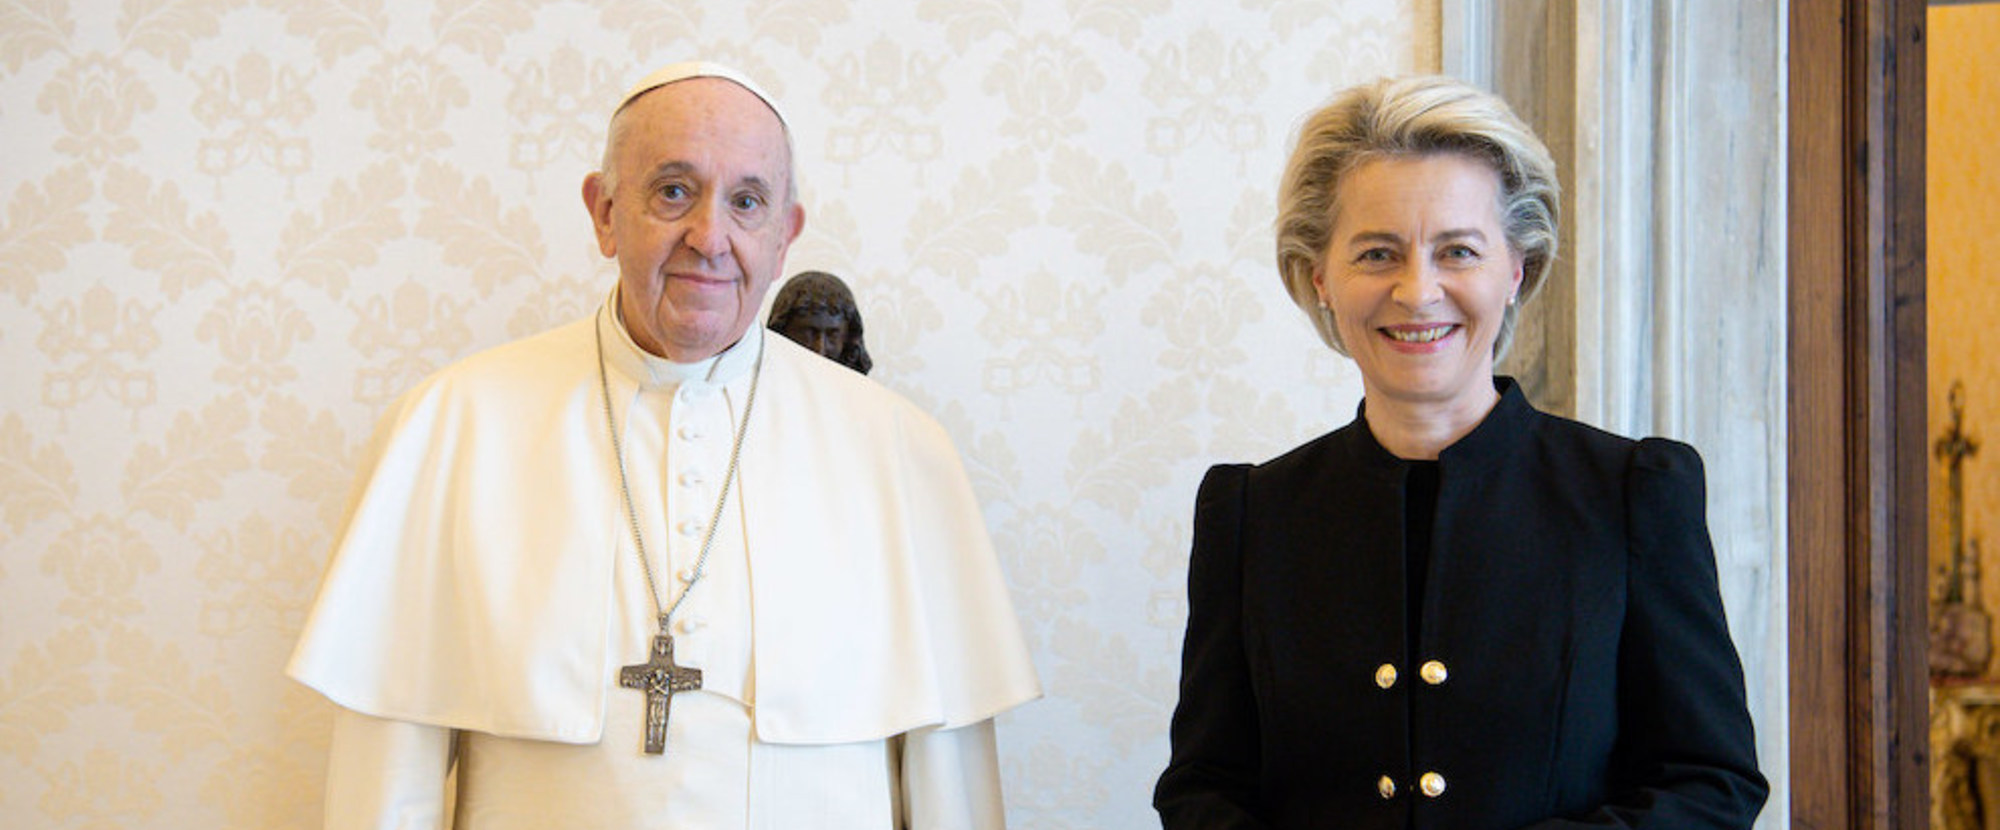 Papst Franziskus empfängt Ursula von der Leyen, Präsidentin der Europäischen Kommission, in einer Privataudienz am 22. Mai 2021 im Vatikan.